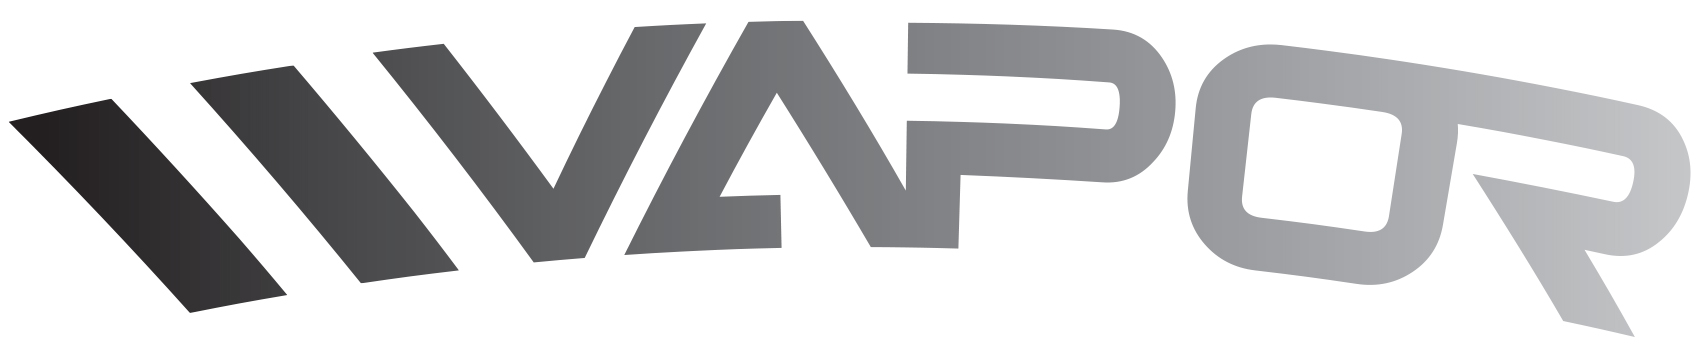 VAPOR Official Logo